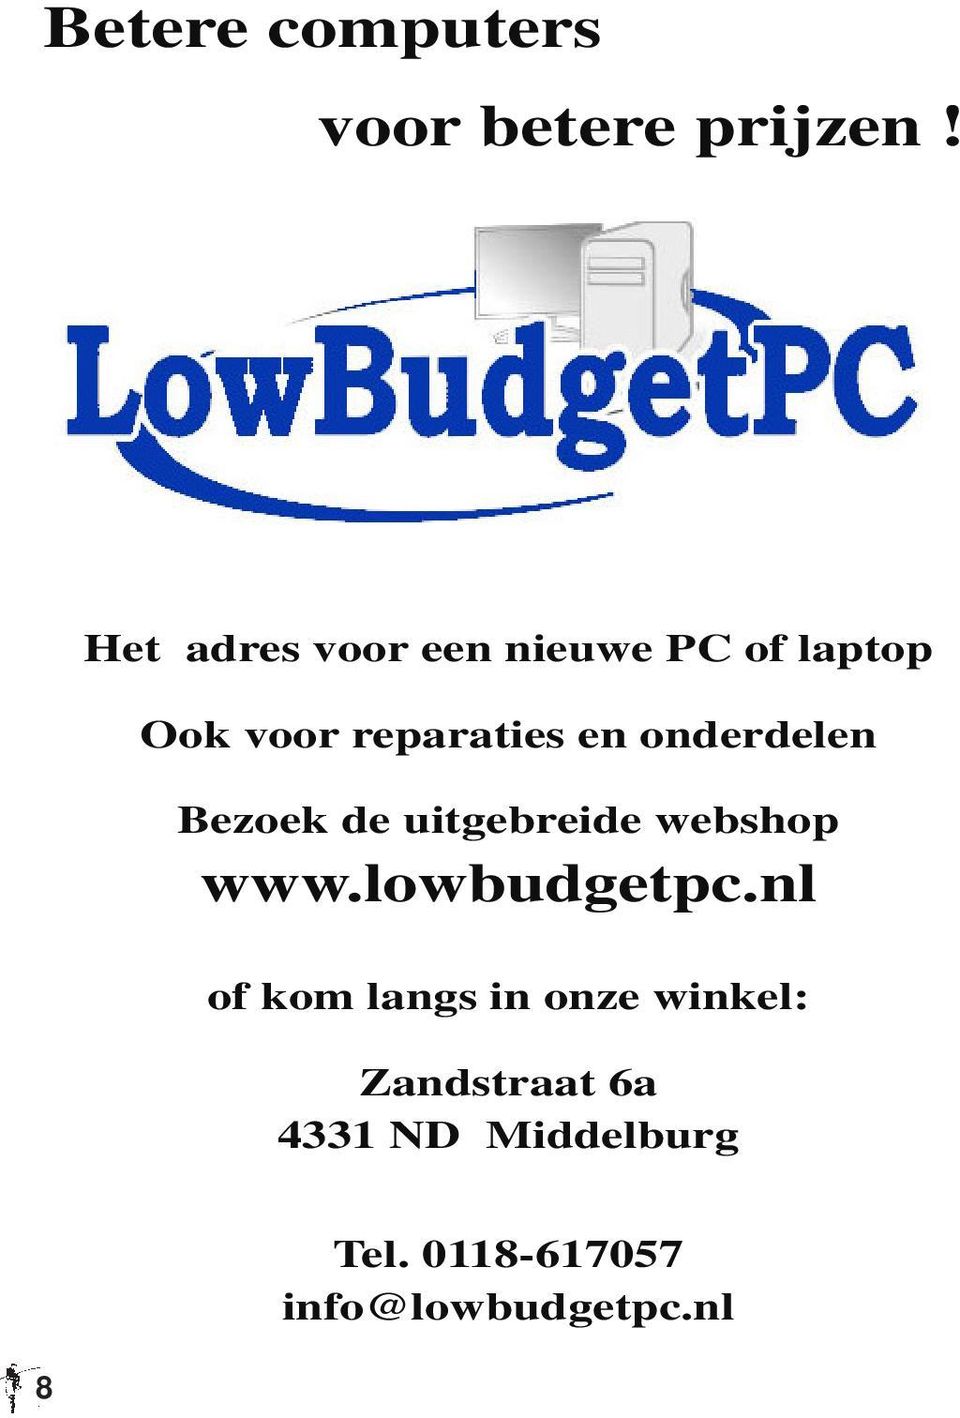 onderdelen Bezoek de uitgebreide webshop www.lowbudgetpc.